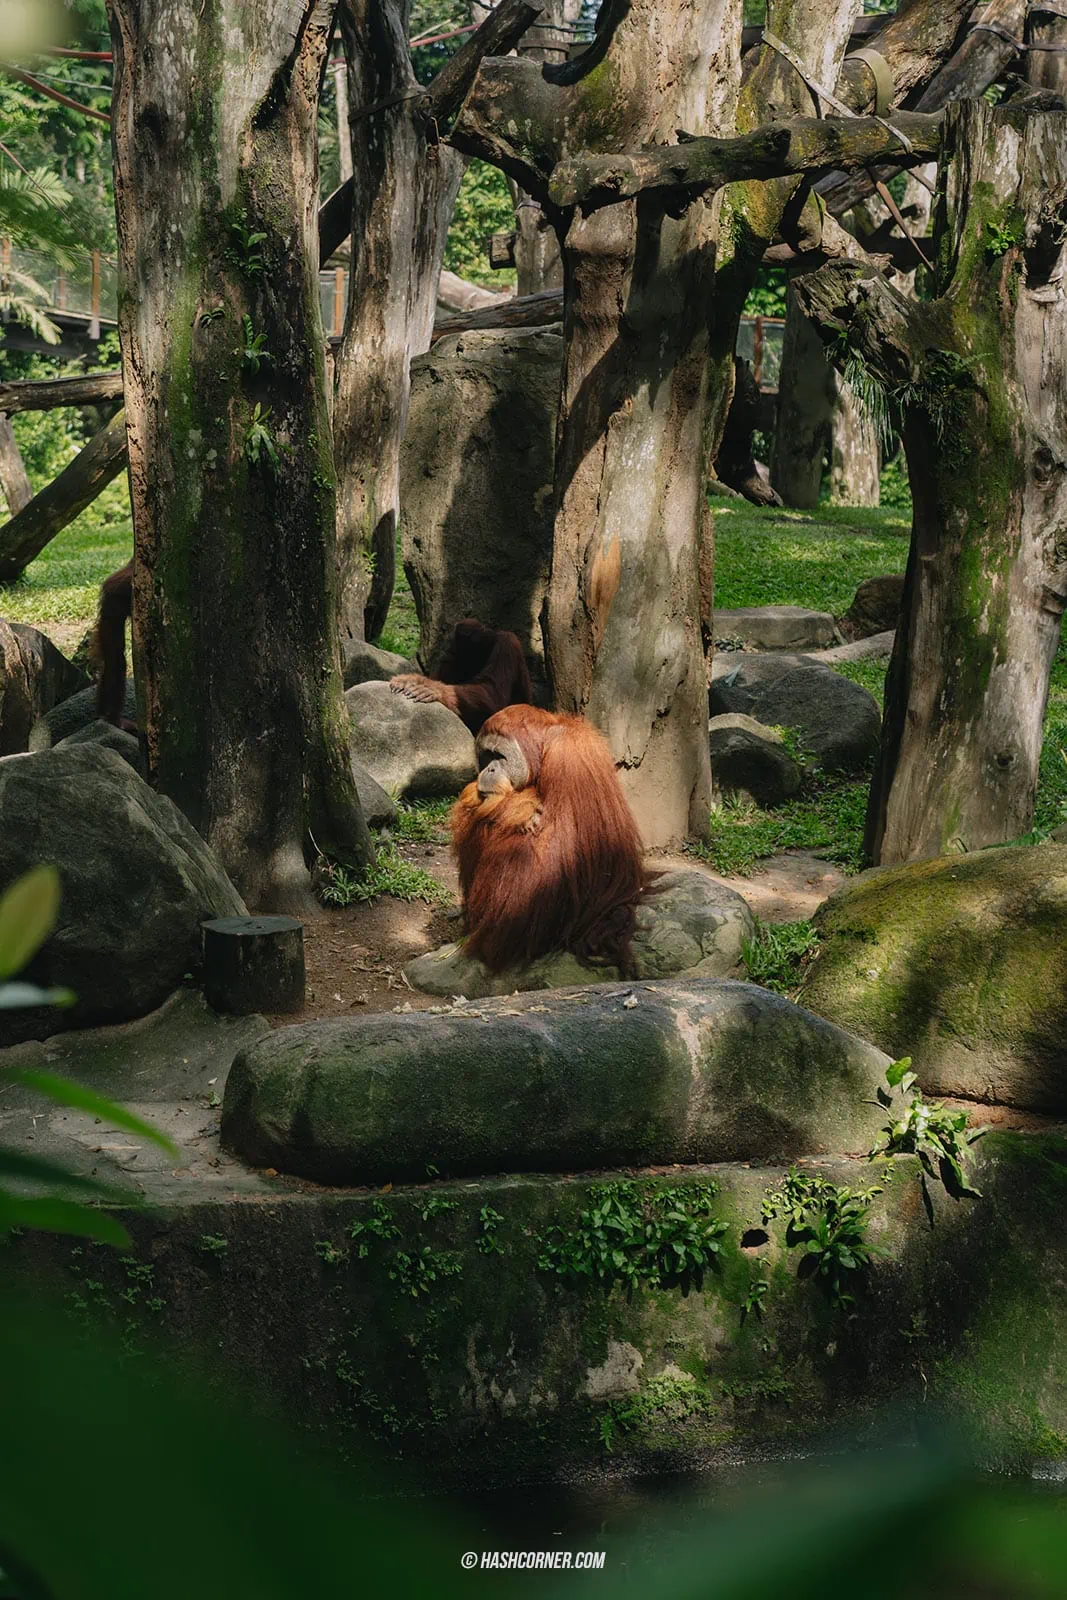 รีวิว Bird Paradise + สวนสัตว์สิงคโปร์ เที่ยวเดย์ทริปส่องสัตว์ &#x1f427;